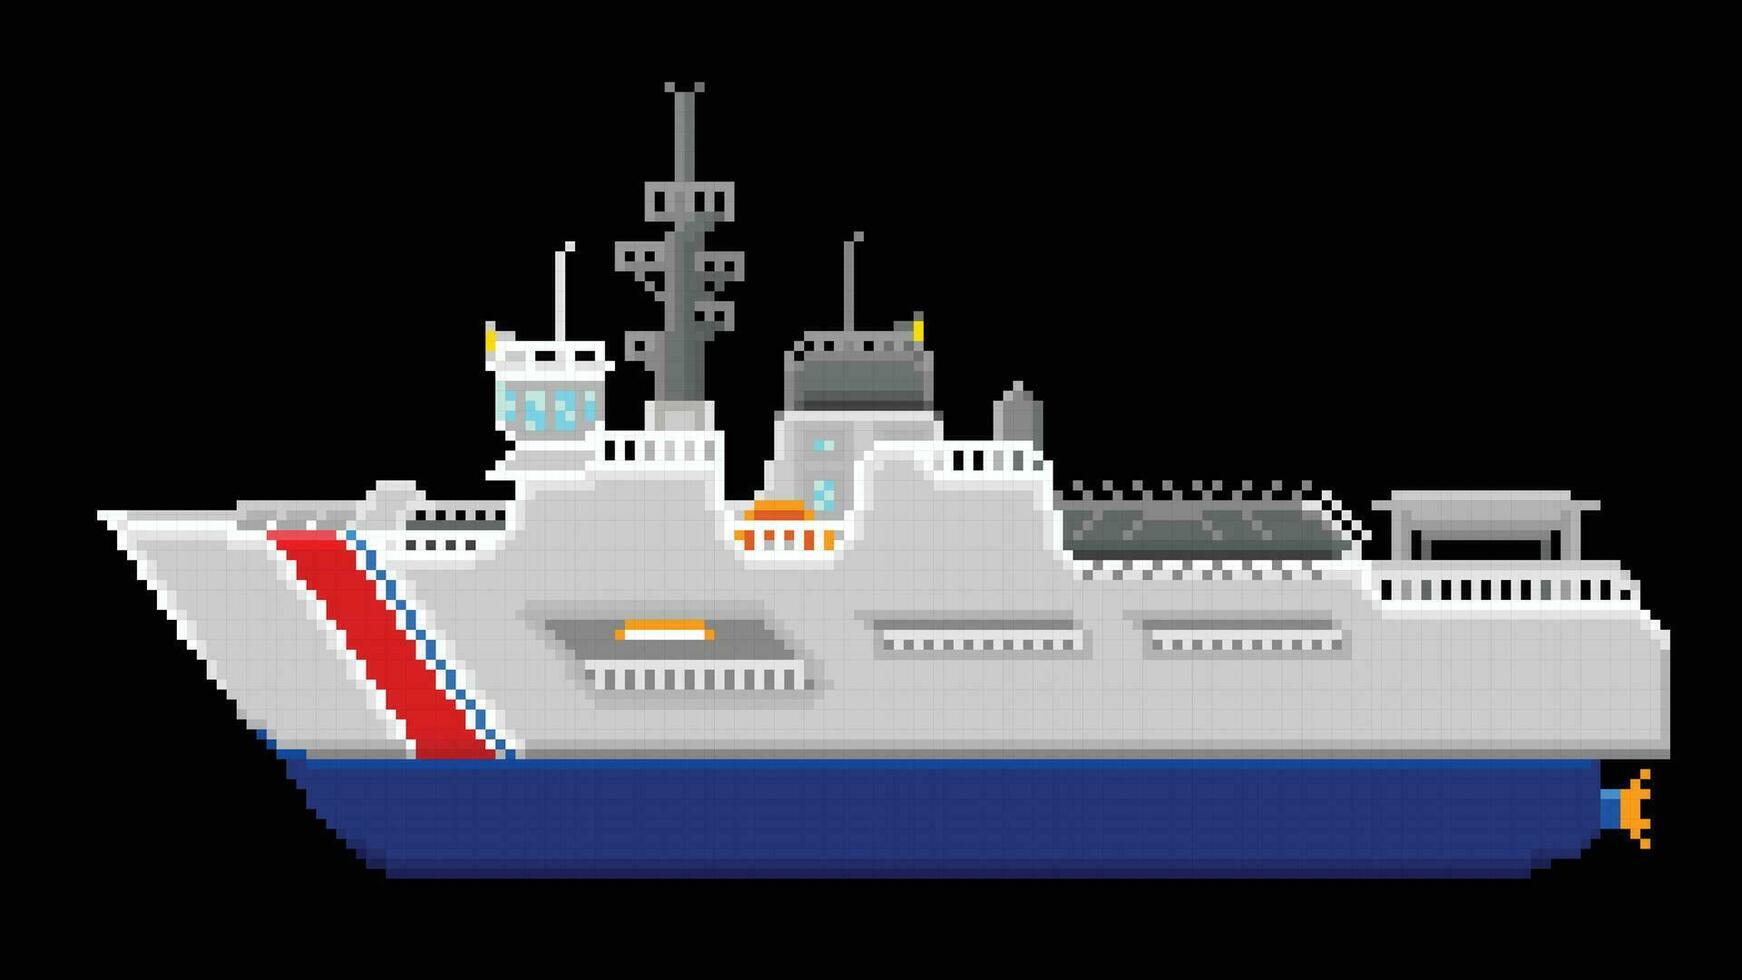 uma costa guarda navio projetado dentro 8 mordeu pixel. uma navio pixel arte ilustração. vetor